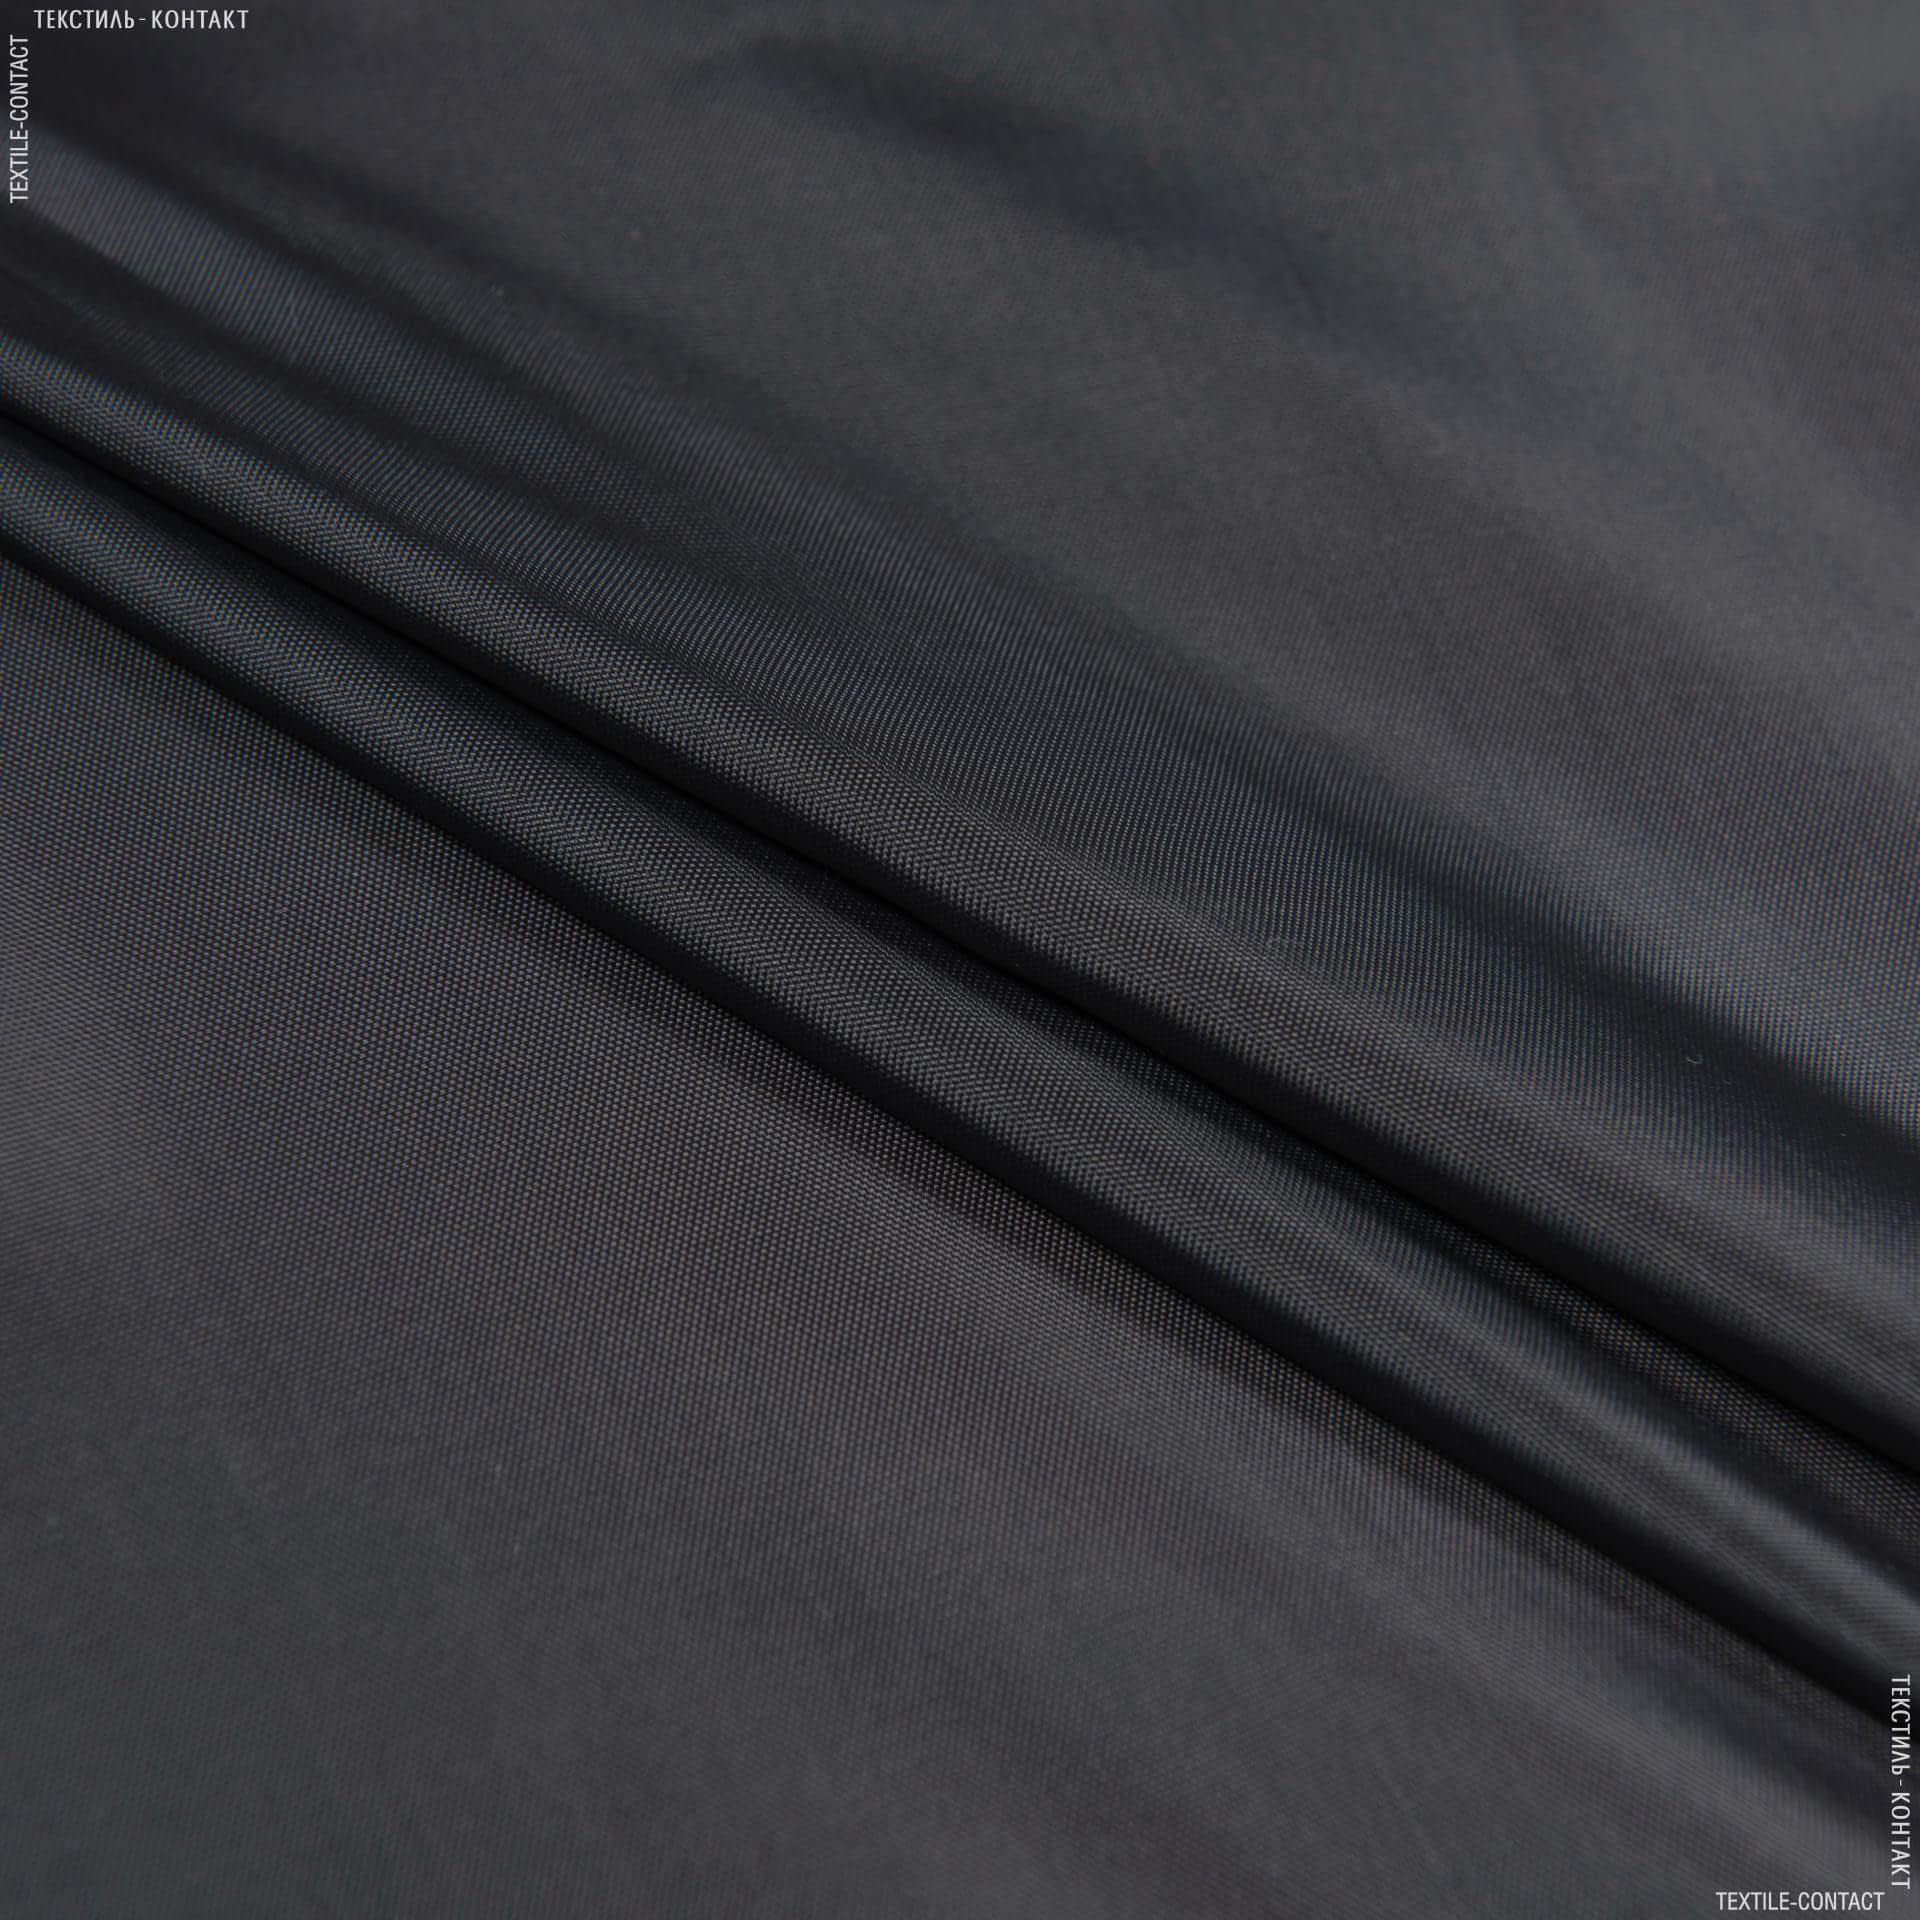 Ткани для палаток - Болония темно-серый